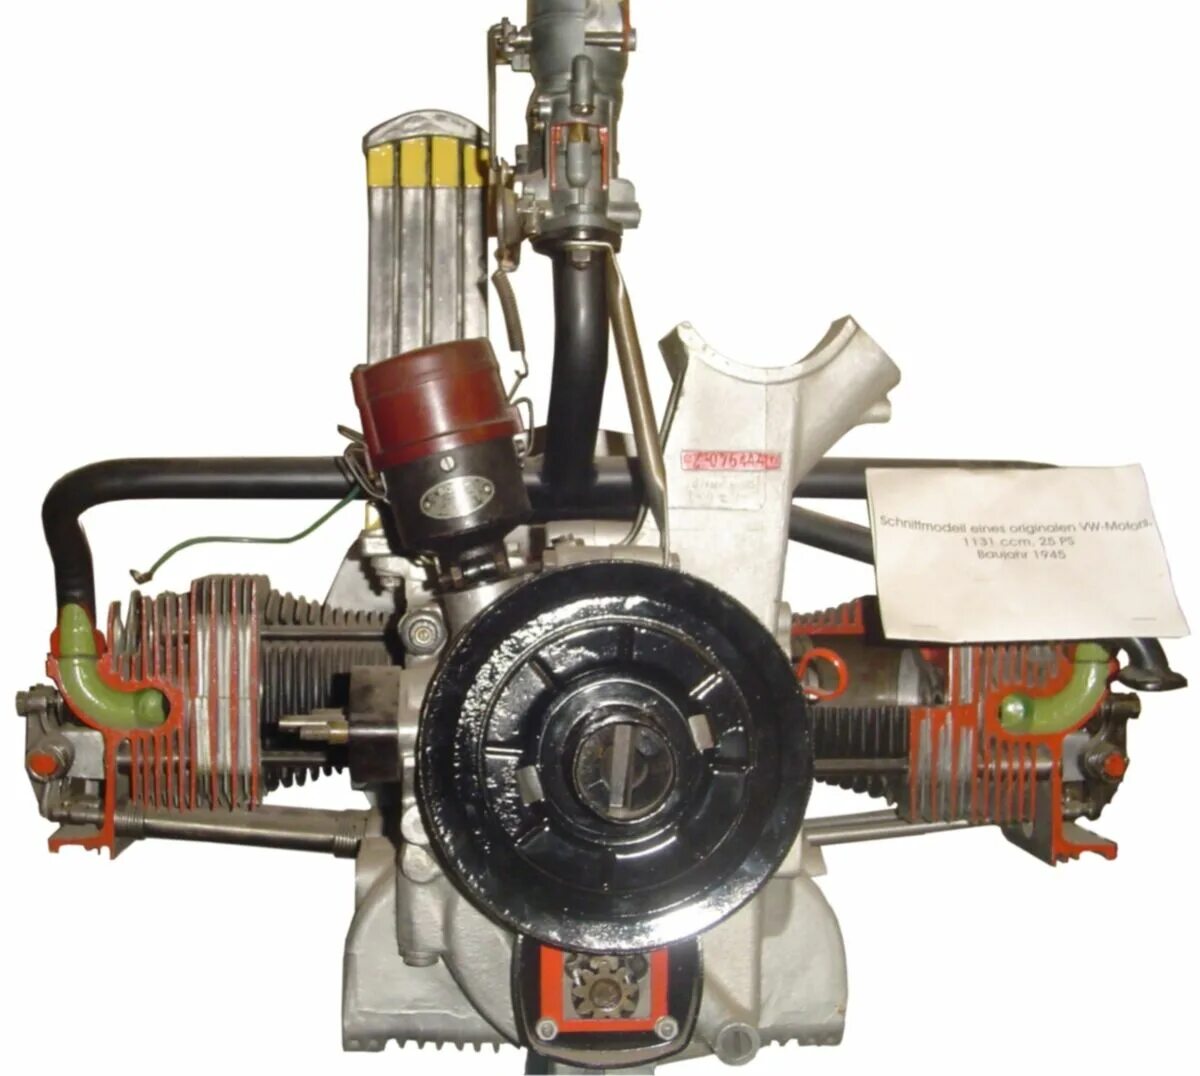 Двигатель Фольксваген оппозитный воздушного охлаждения. Оппозитные ДВС VW. Оппозитный дизельный двигатель Фольксваген. 4-Х цилиндровый оппозитный двигатель. Flat engine